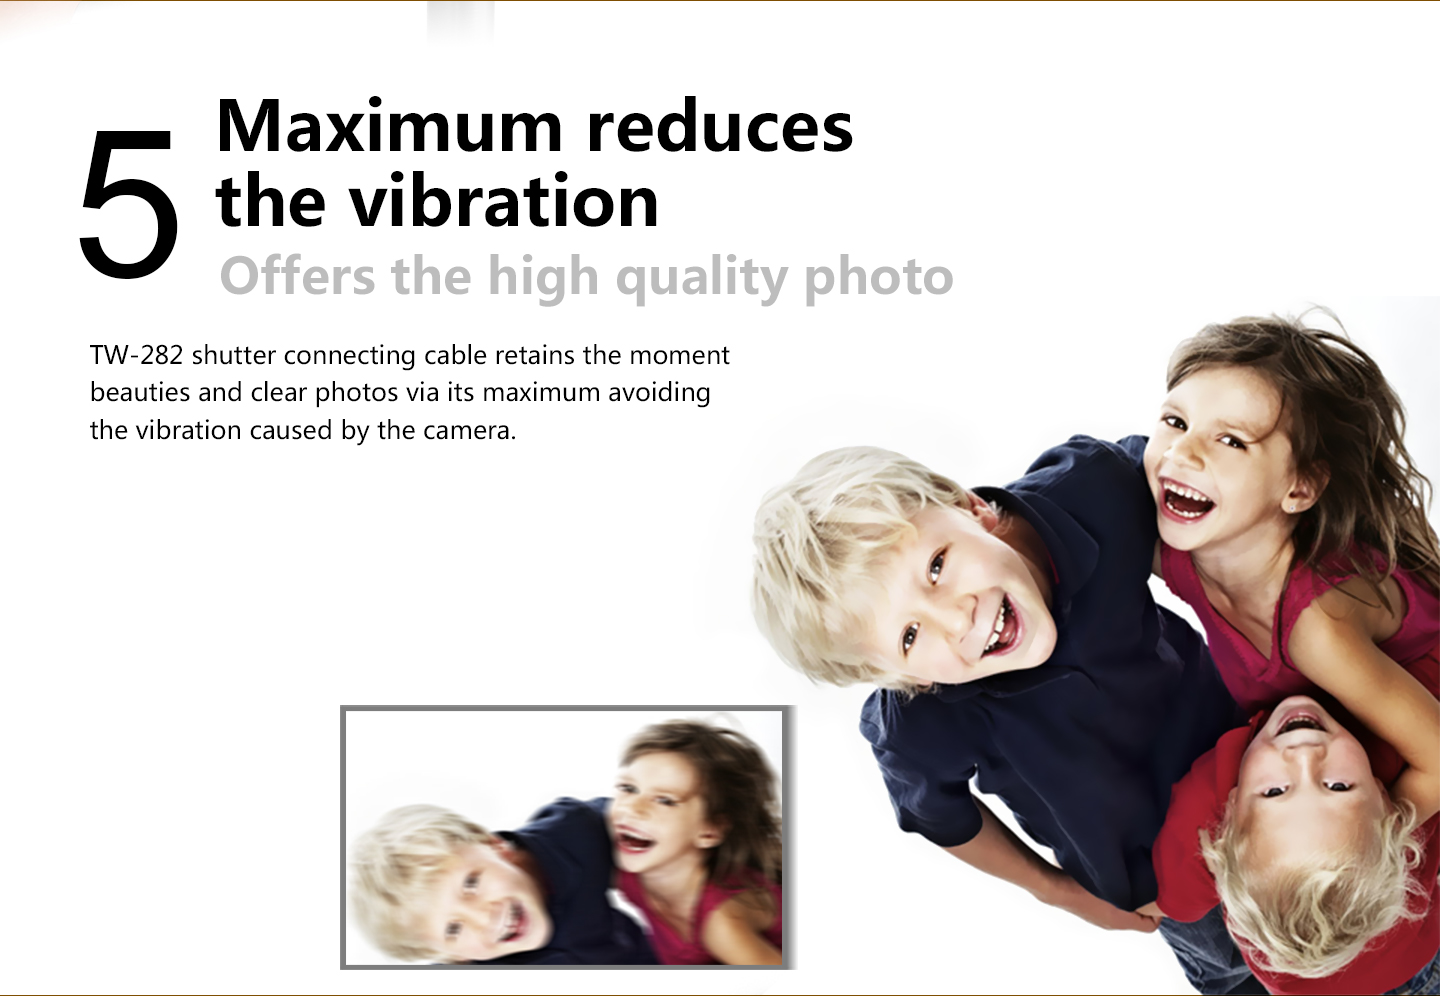 Maximum reduces the vibration